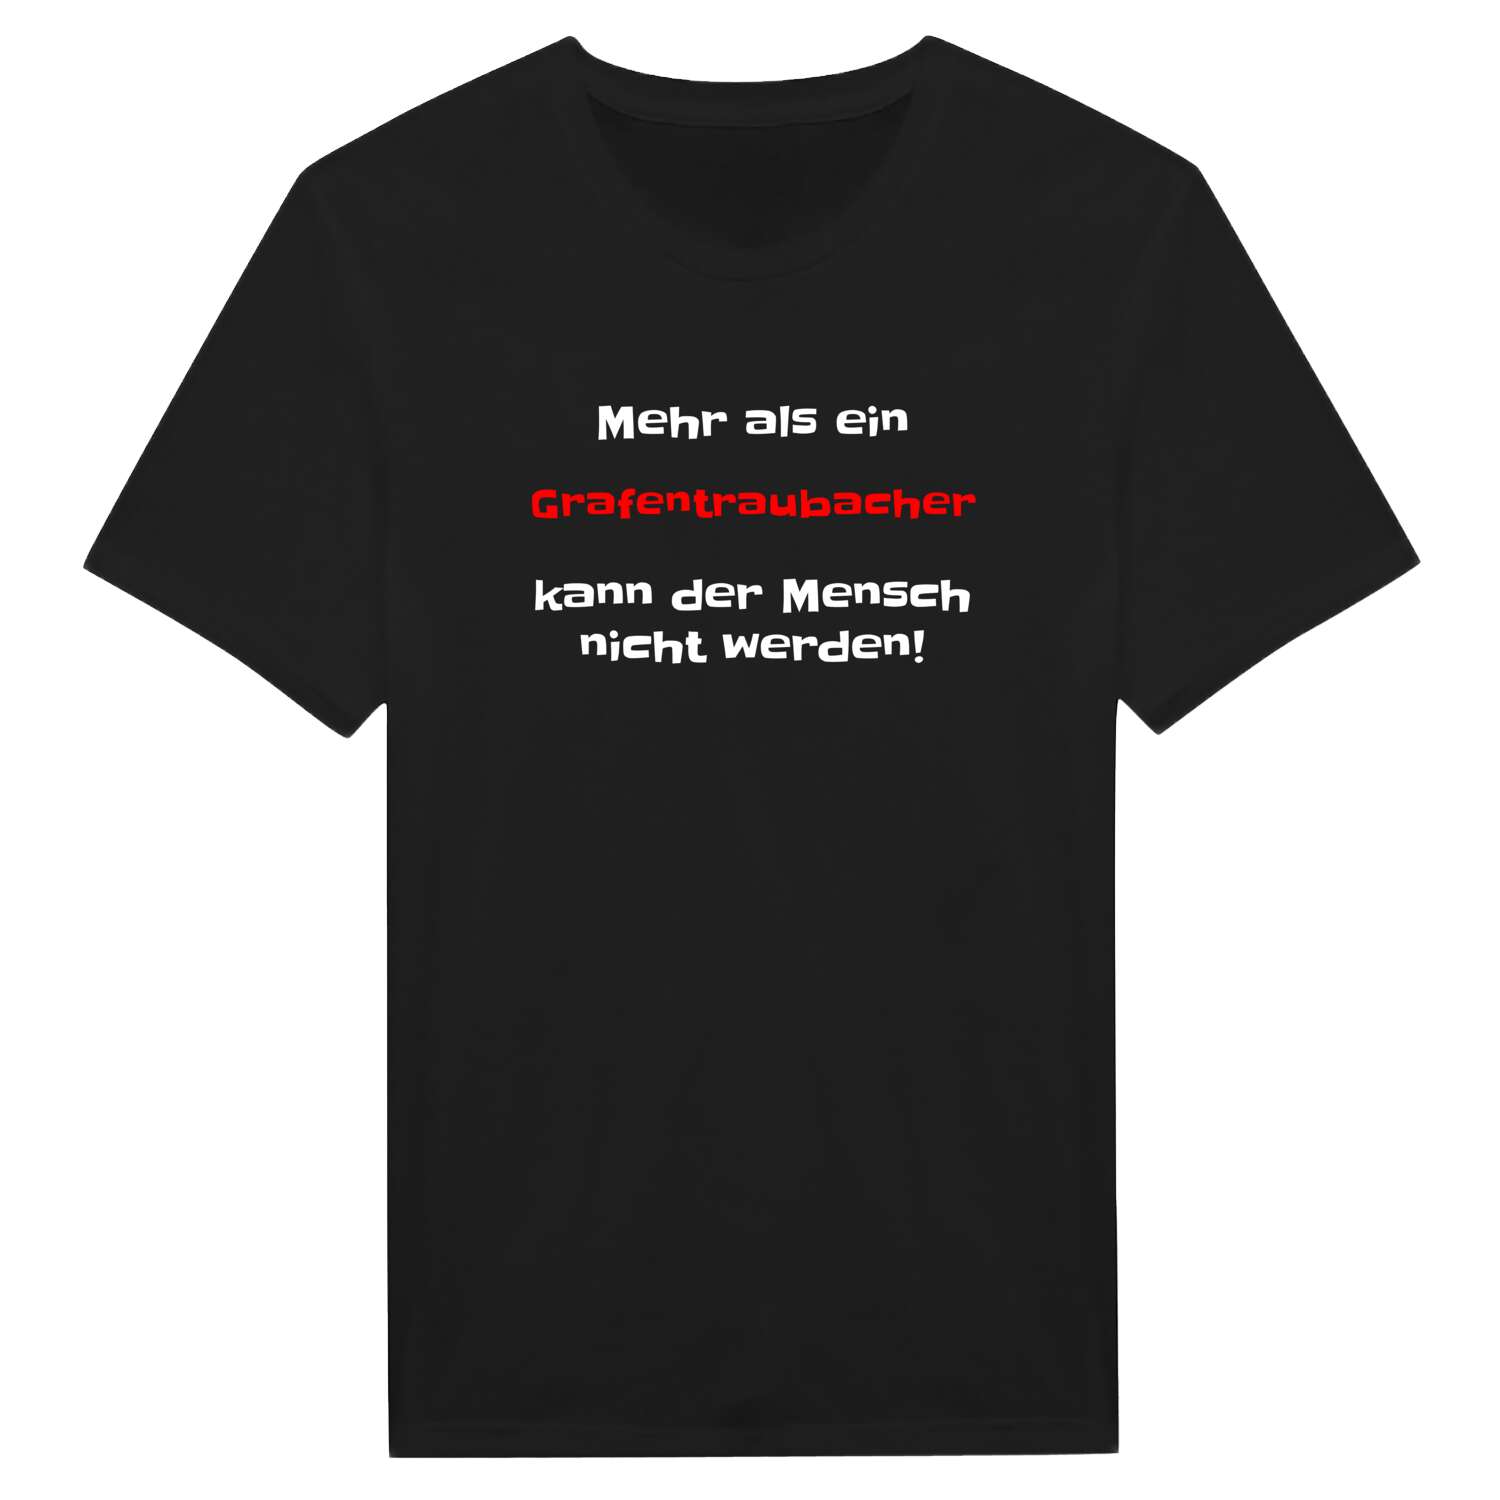 Grafentraubach T-Shirt »Mehr als ein«